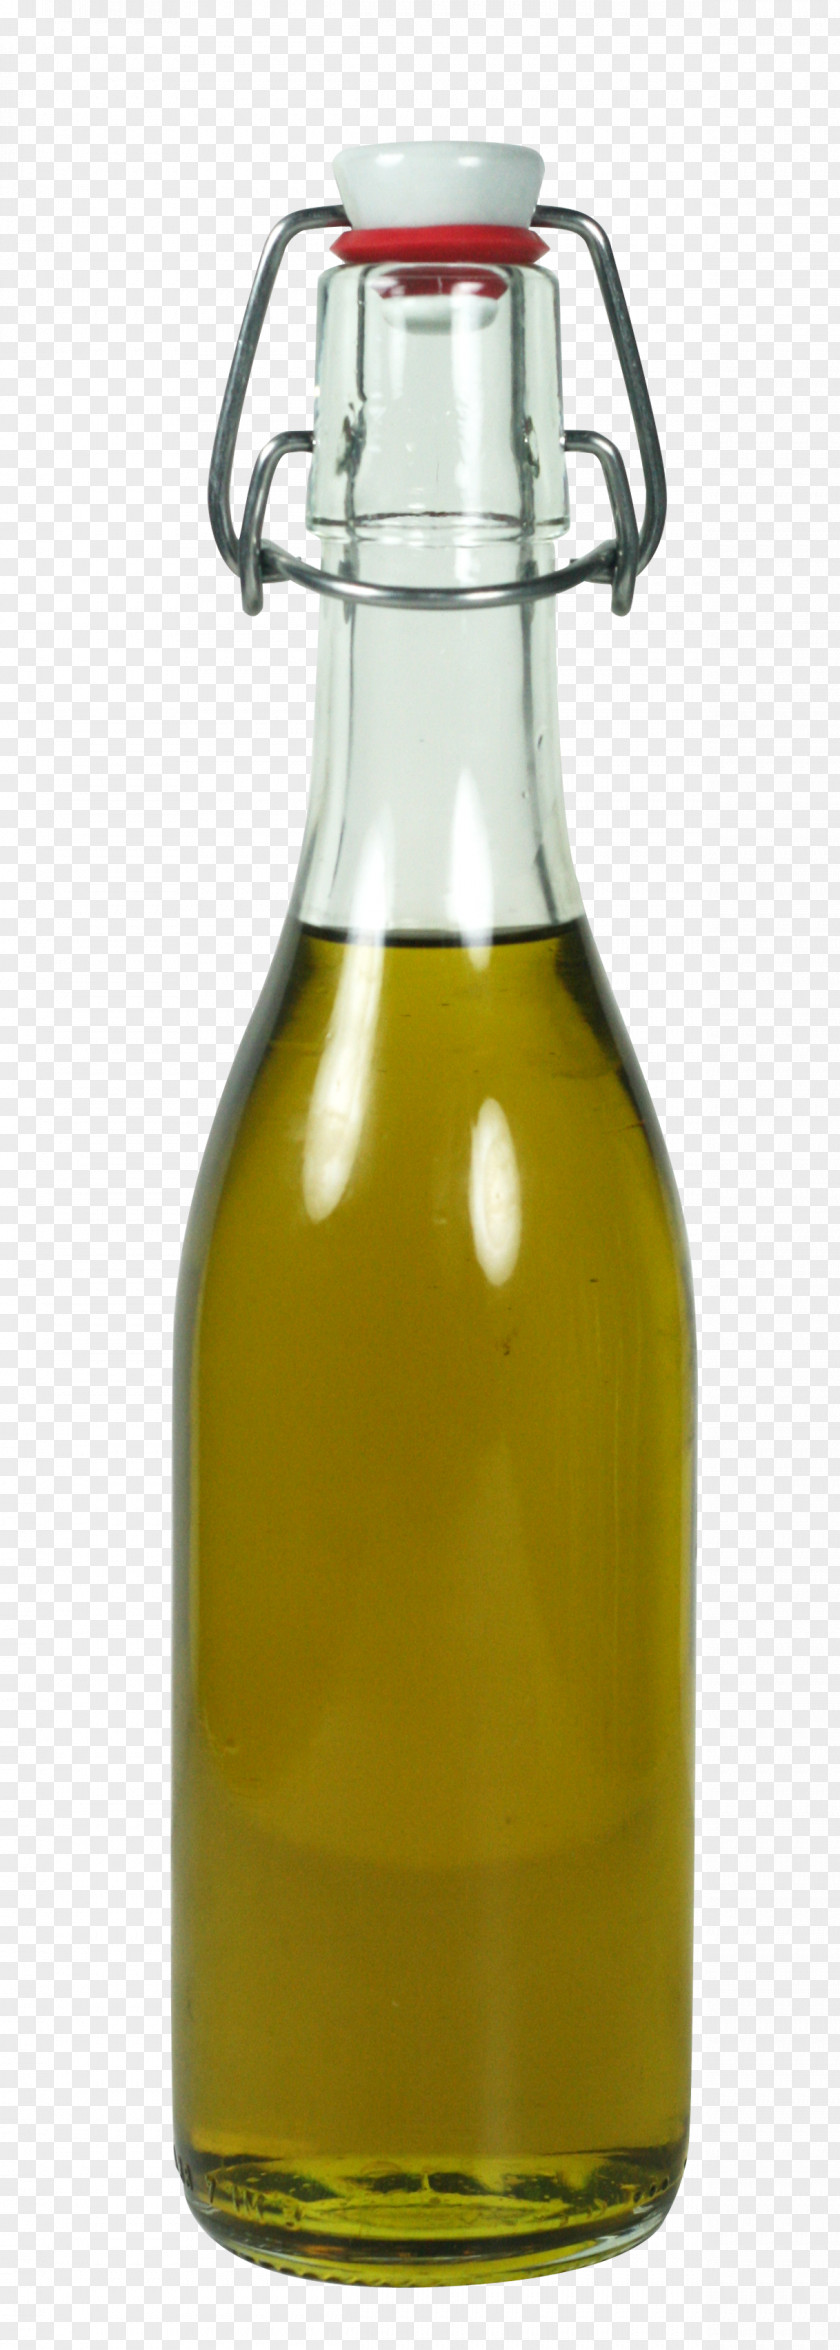 Beer Bottle Vegetable Oil Glass PNG